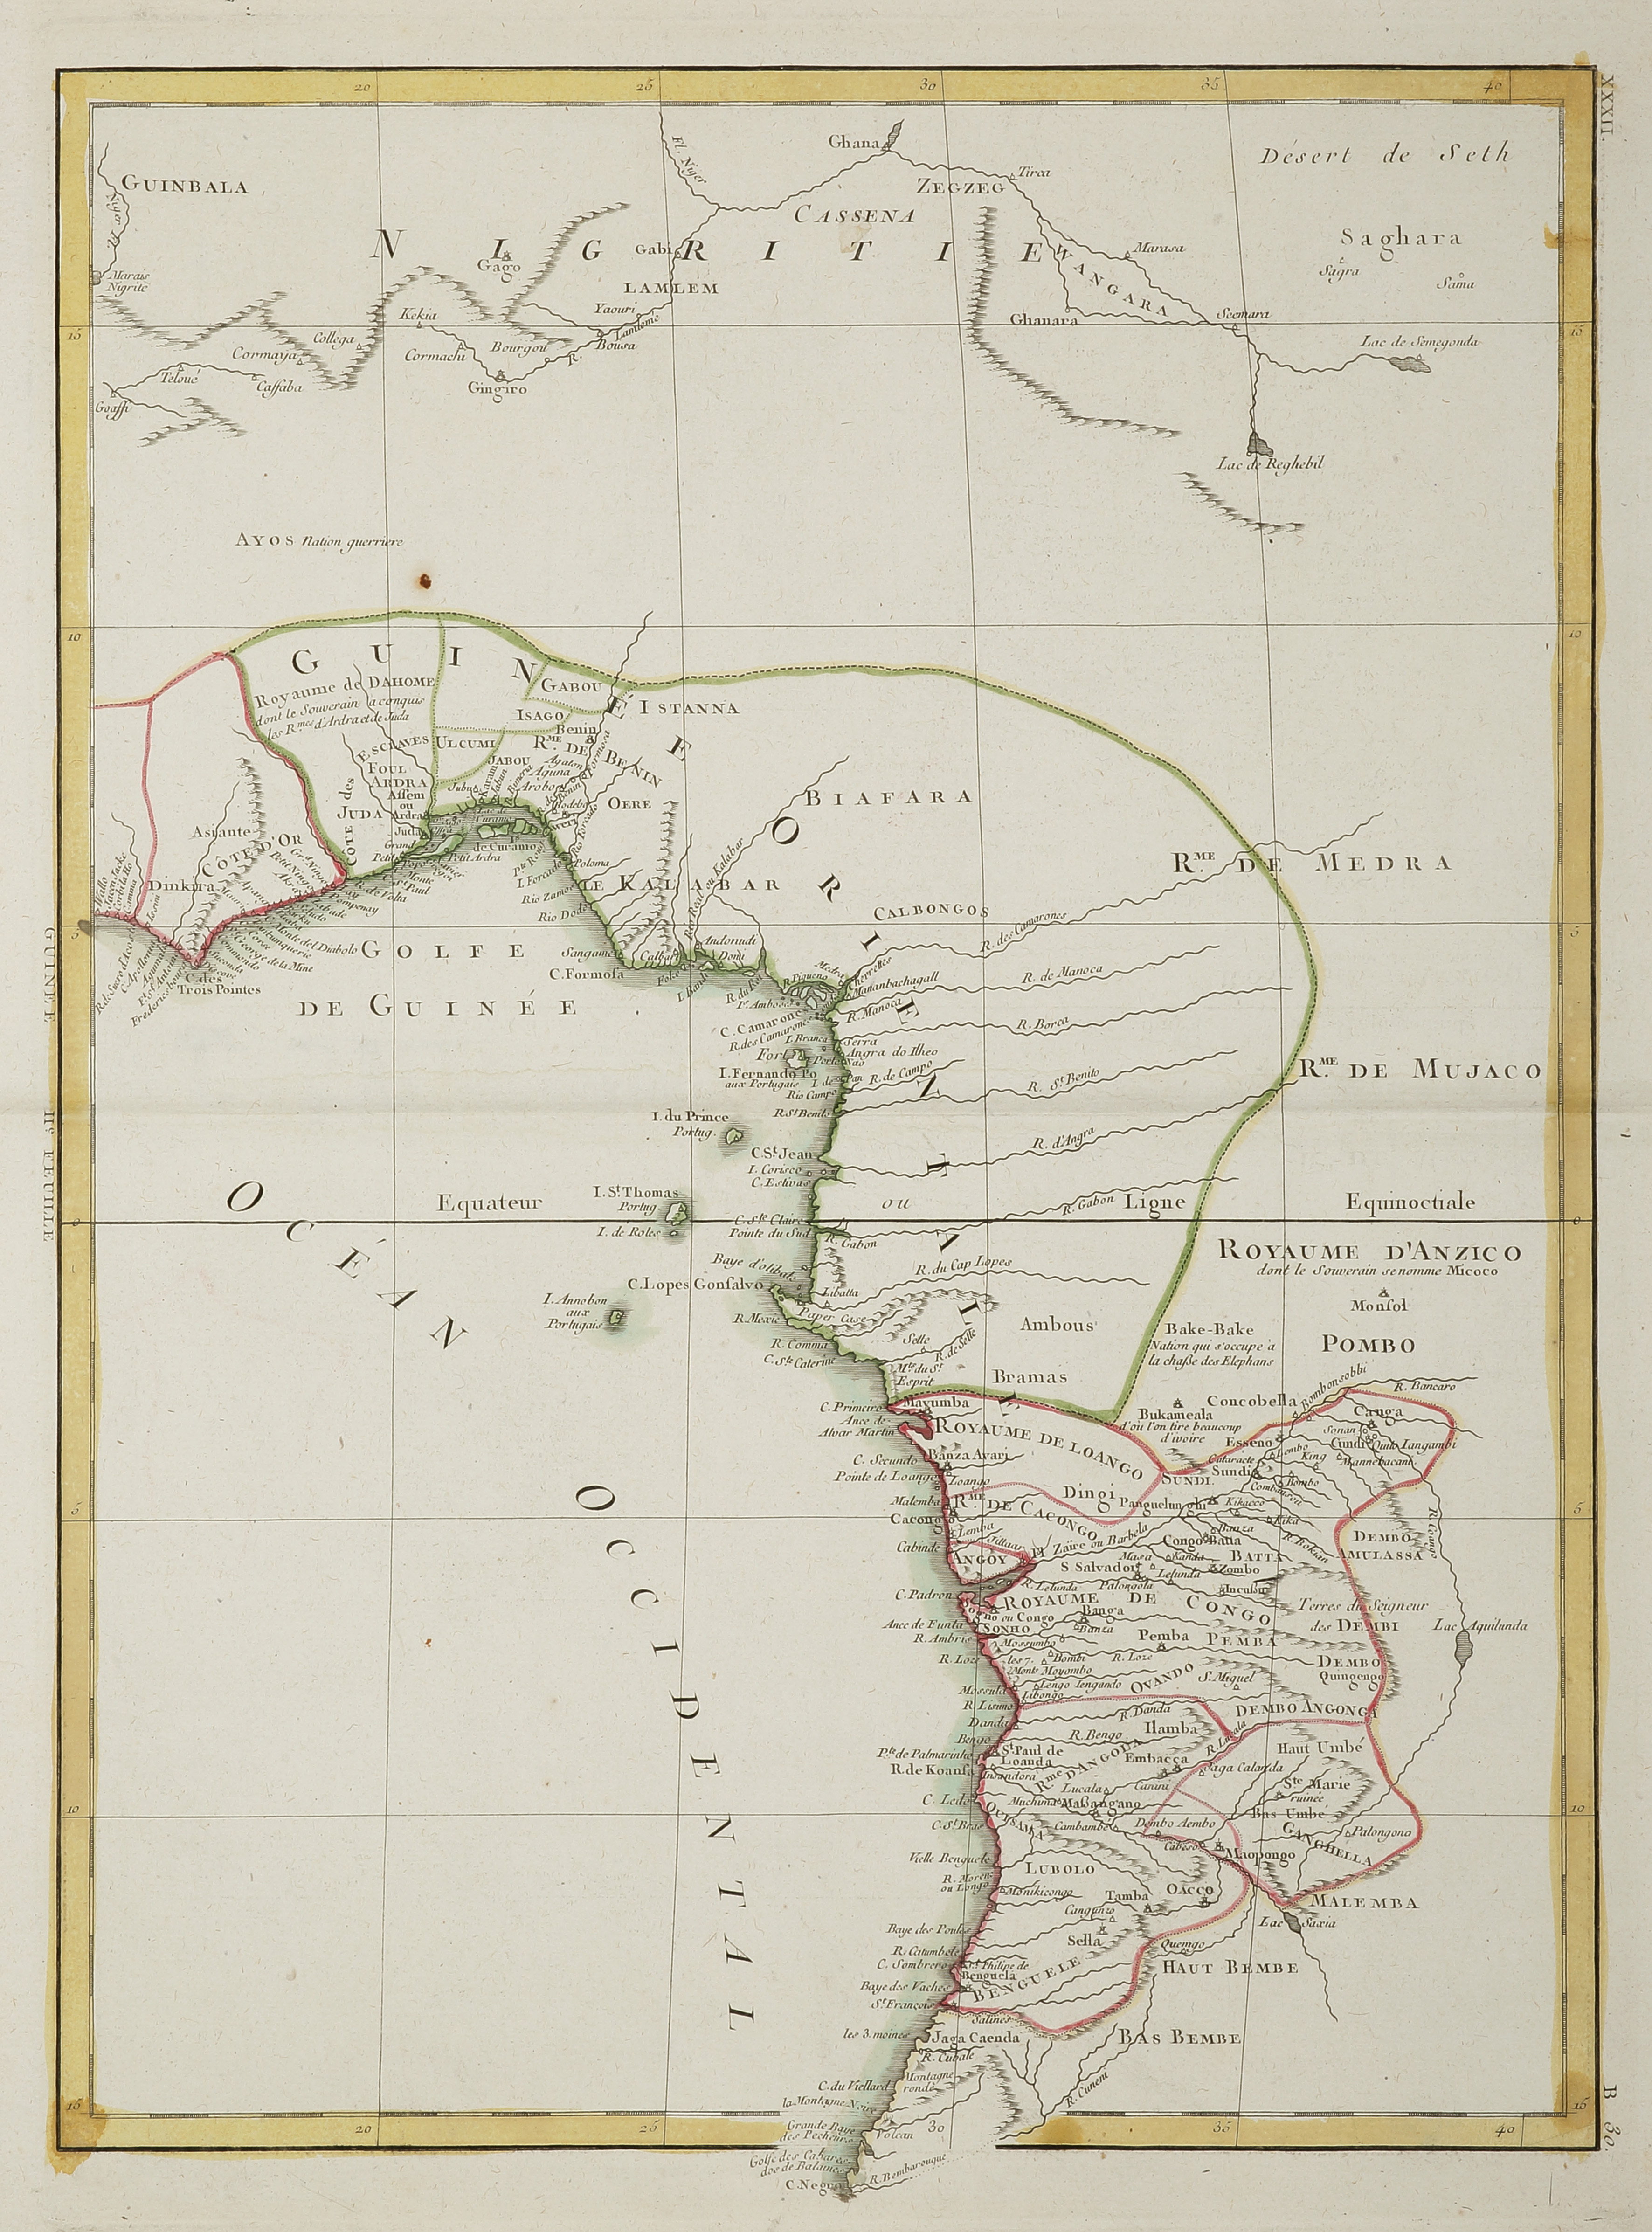 Carte de La Guinee, contenant les Isles du Cap Verd, le Sengal.... - Antique Print from 1781